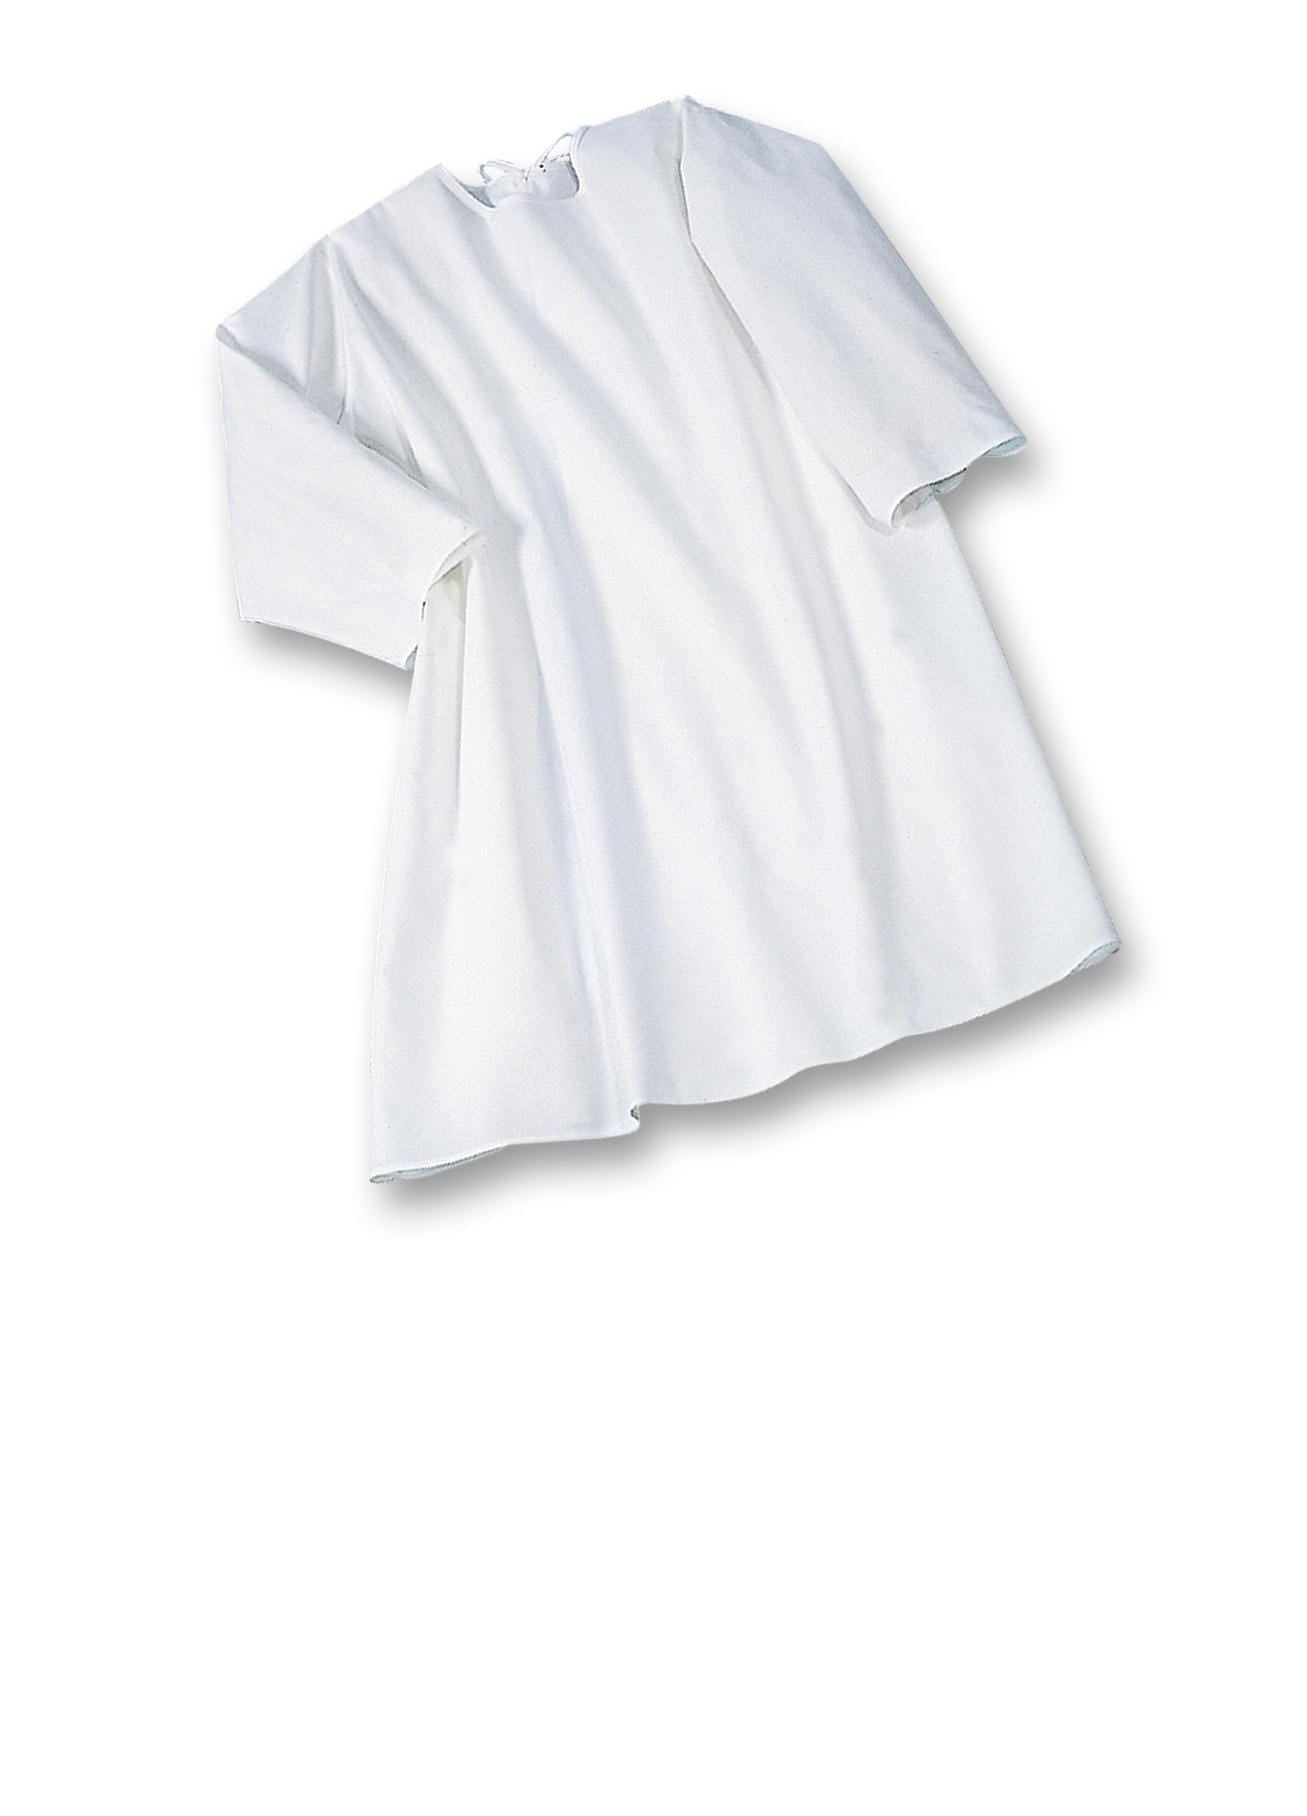 Pflegeprodukte Suprima Pflegehemd Baumwolle zum Binden - Langarm Nr. 4071-001 Suprima guenstig online kaufen bei VIDIMA